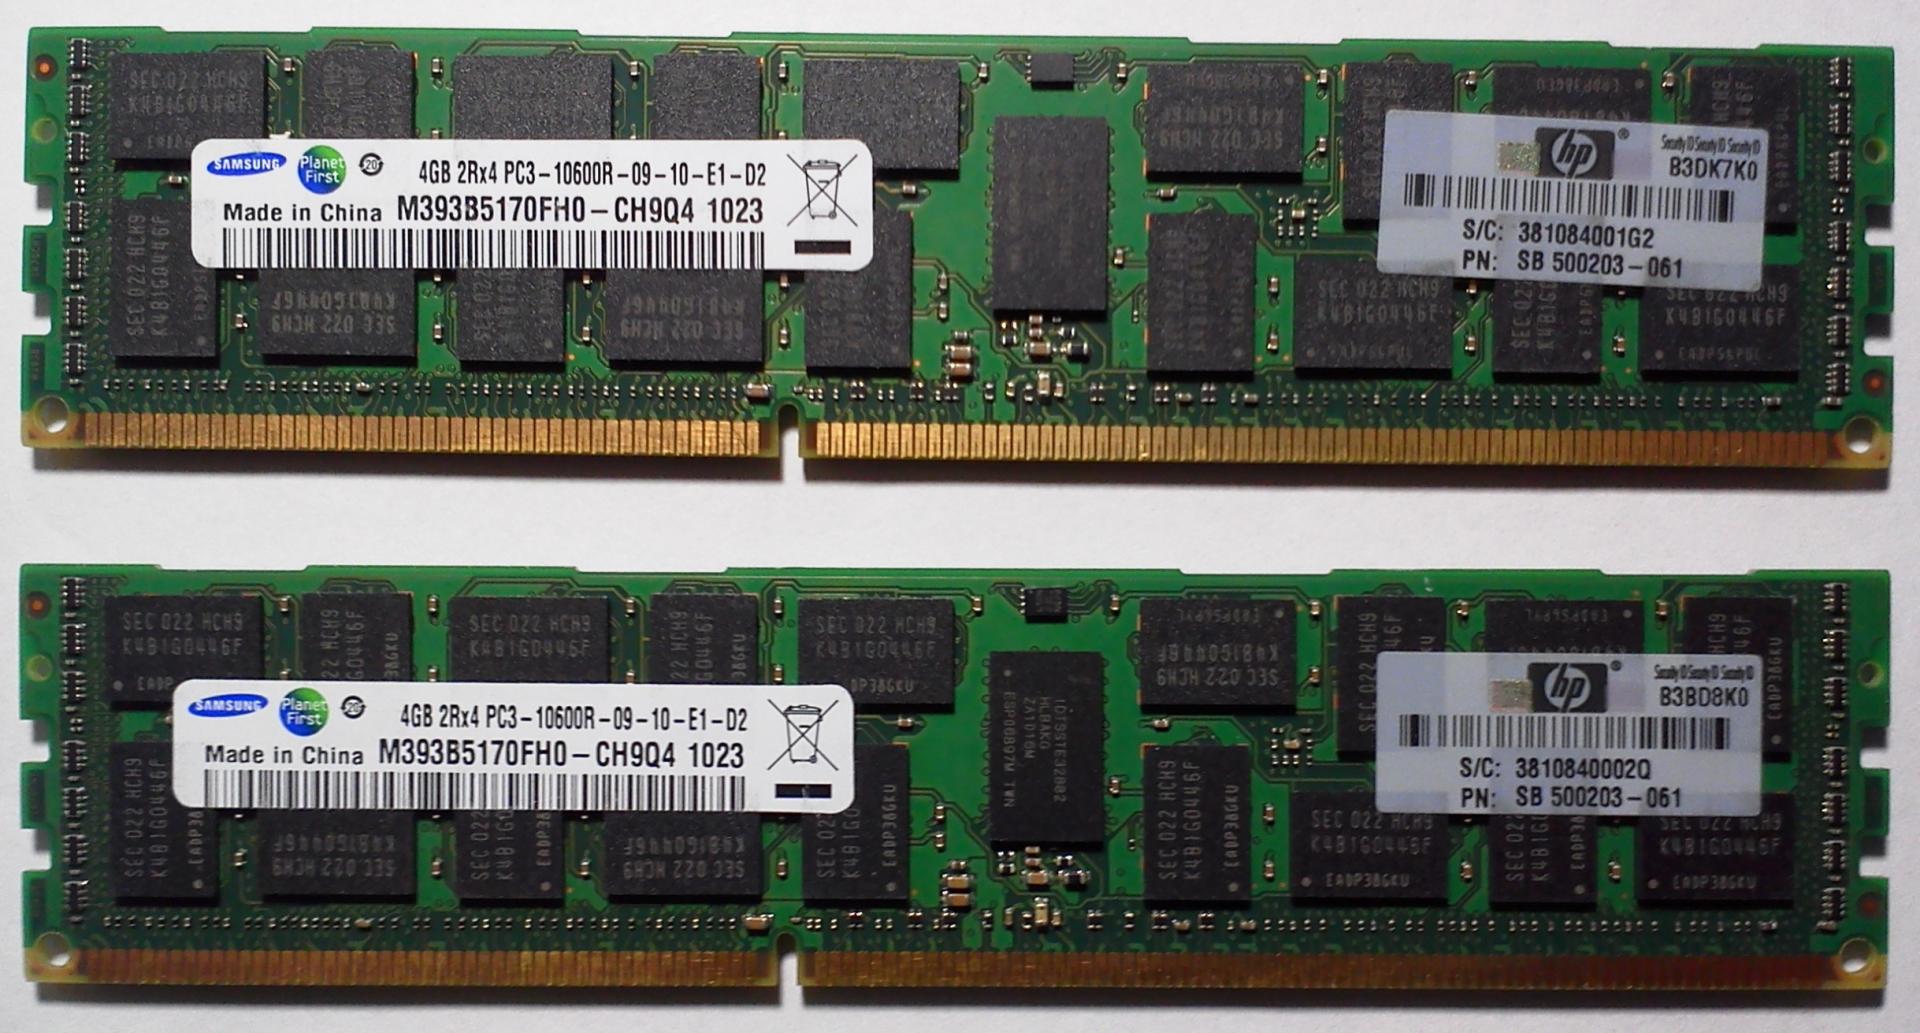 Как узнать память ddr3 или ddr4. Память Samsung ddr3 2rx4 pc3 - 10600r 4 GB. Память Samsung ddr3 2rx4 pc3 - 10600r 4 GB тайминги. Серверная ОЗУ ddr3.